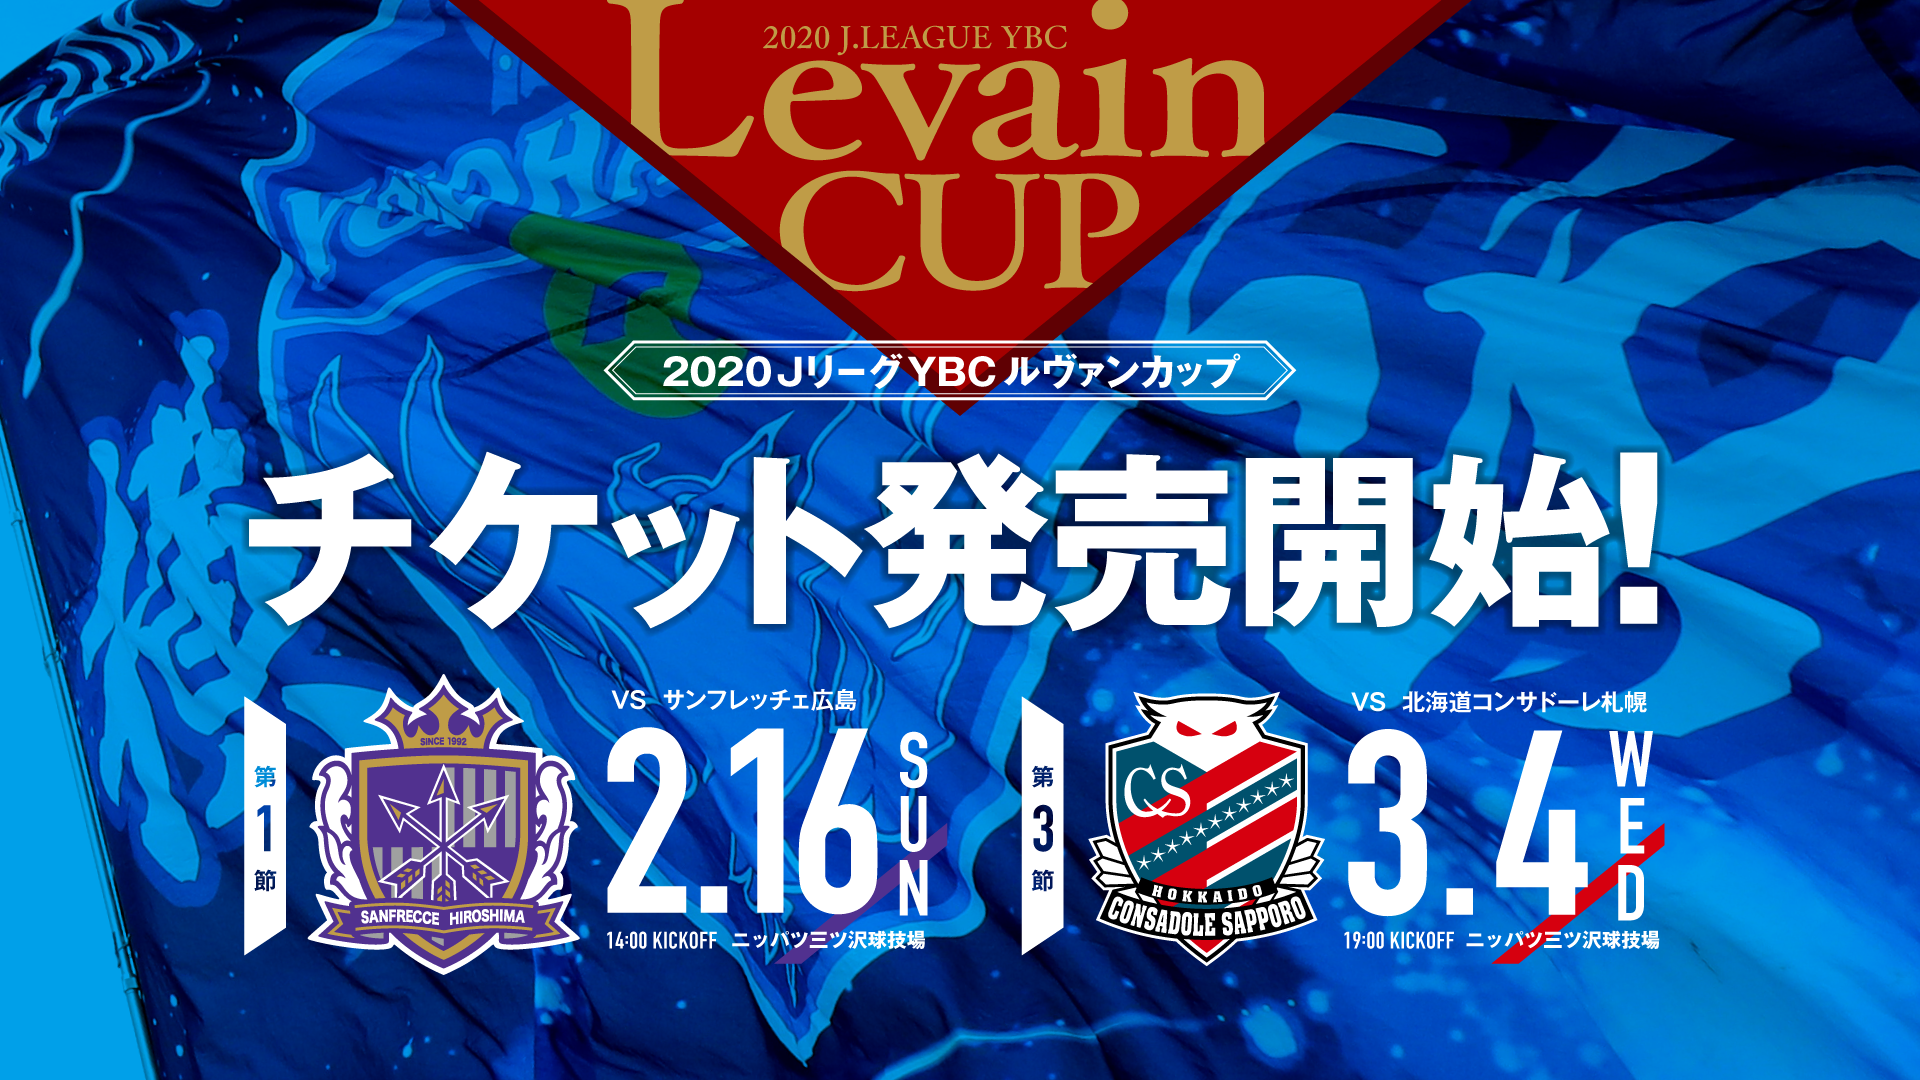 ルヴァンカップ横浜fcホームゲームチケット発売のお知らせ 横浜fc